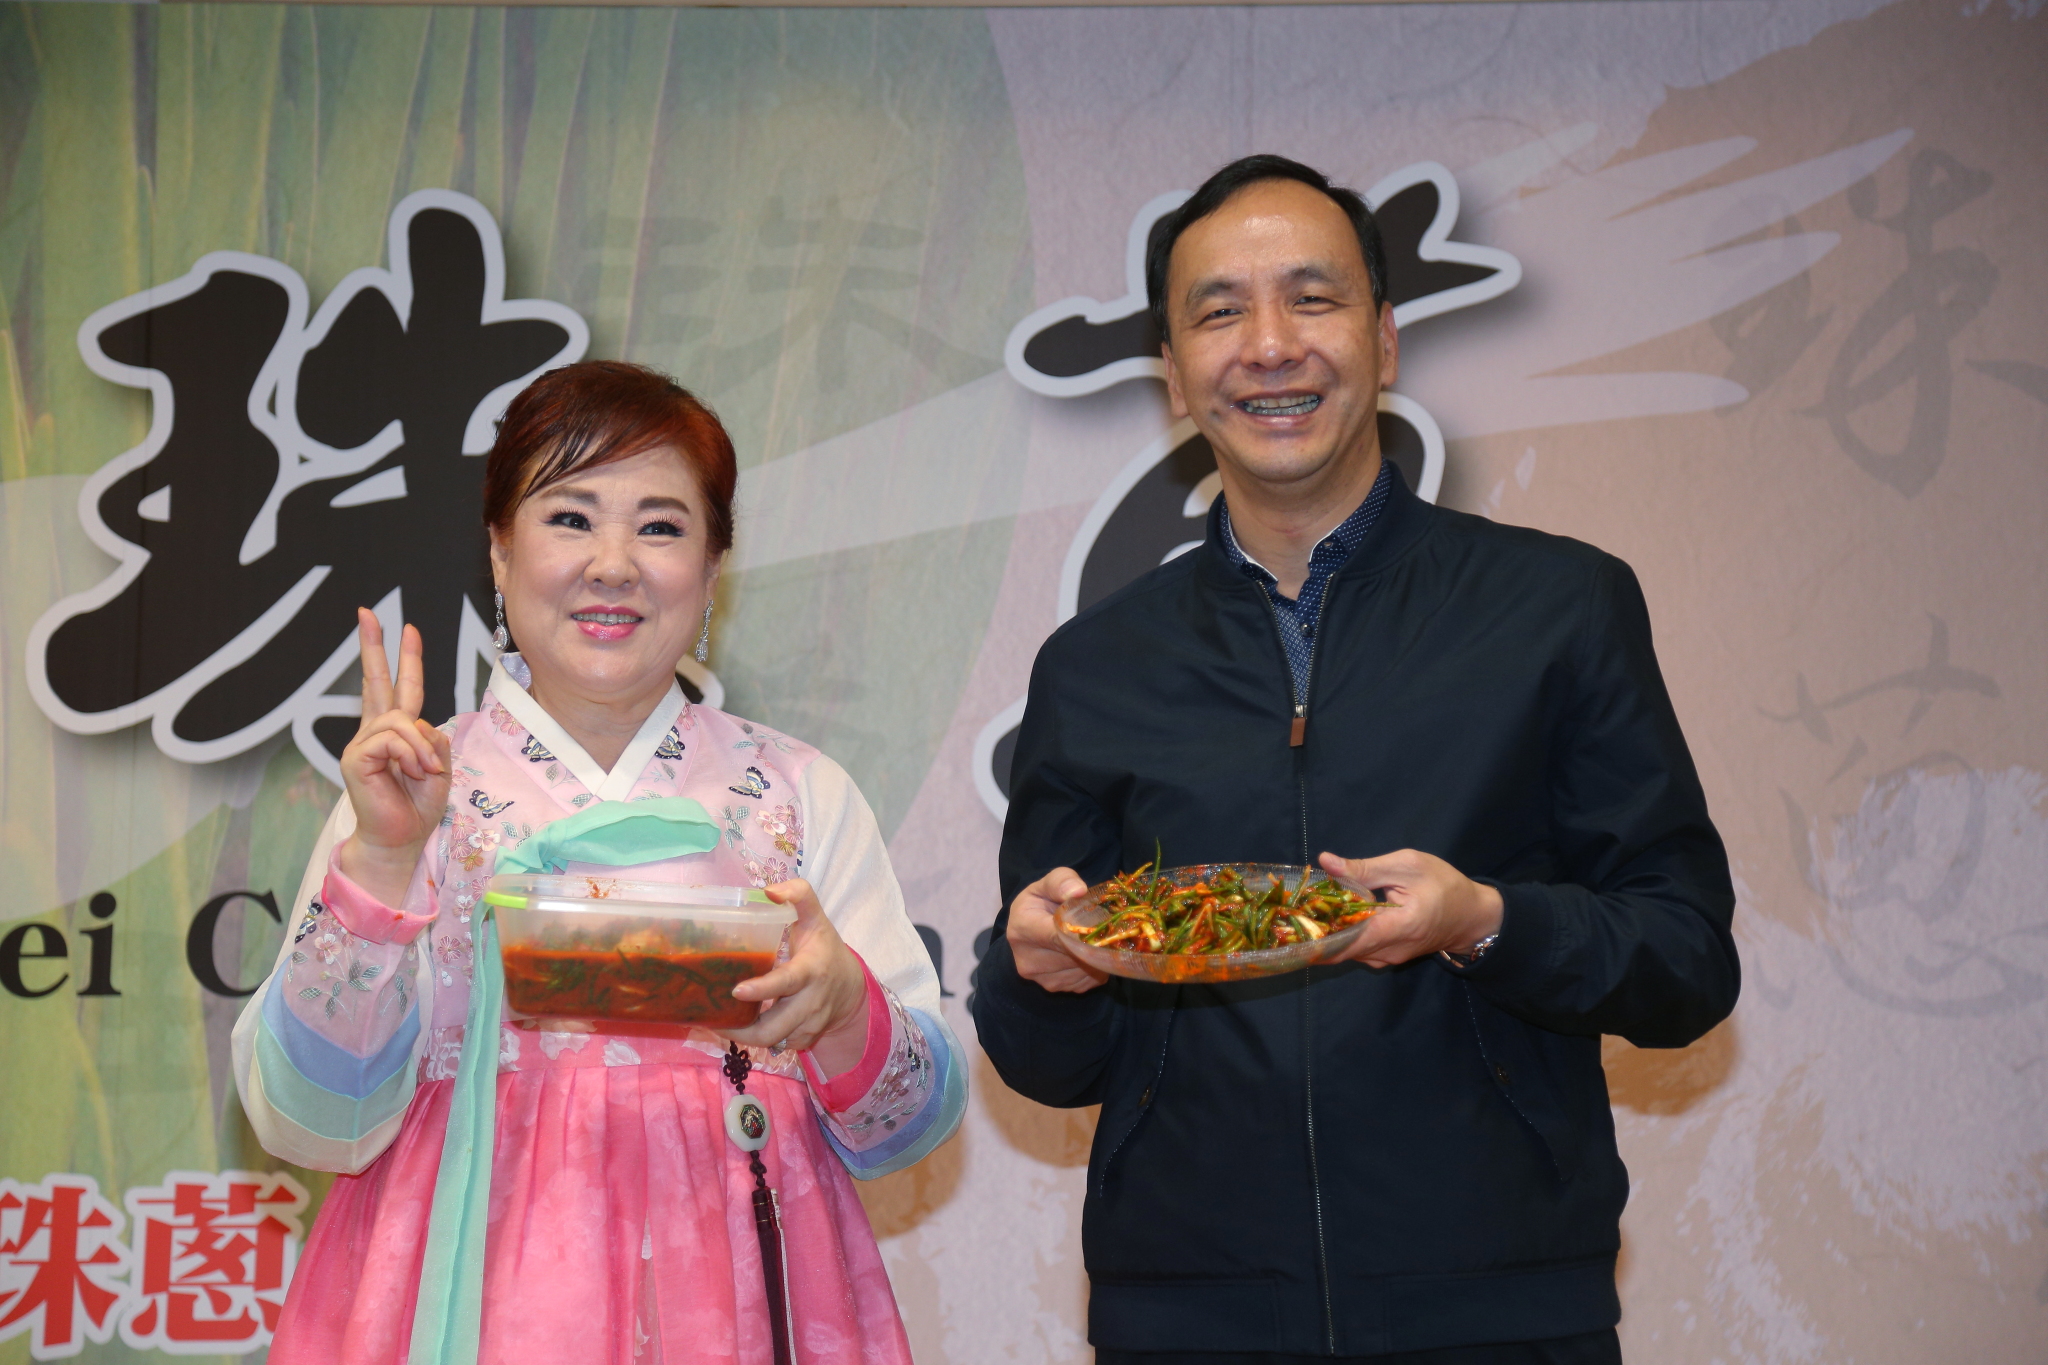 朱市長與韓籍主廚示範珠蔥泡菜作法